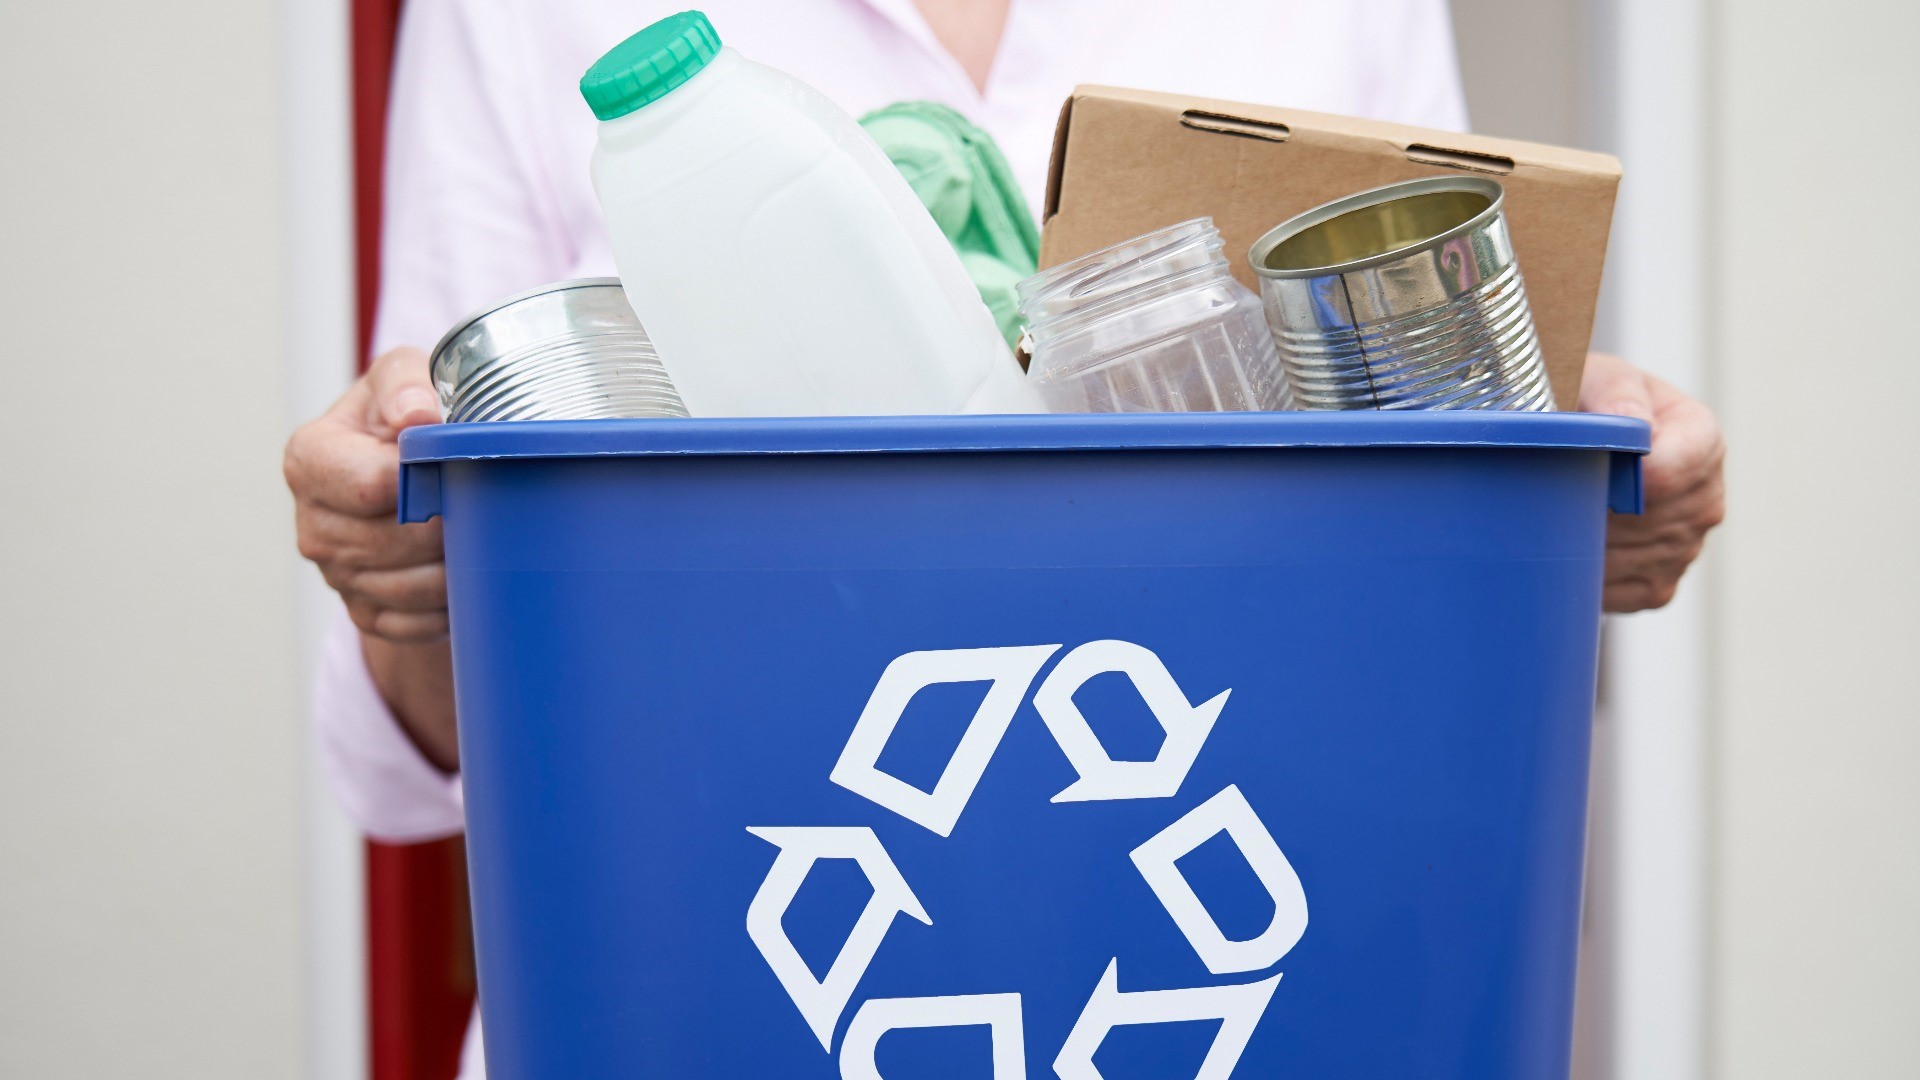 plastic bottle shaped recycling bin